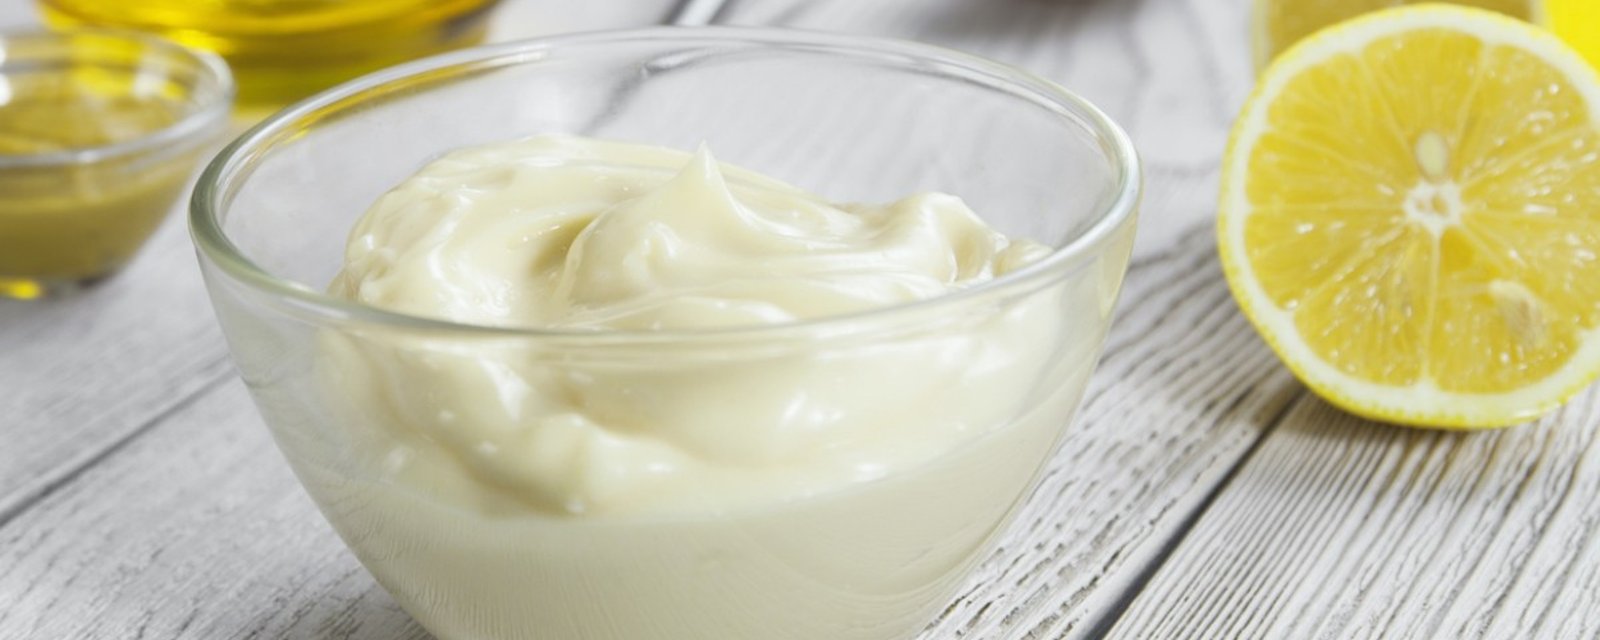 DIY : Faites votre propre mayonnaise maison à la façon de Gordon Ramsays